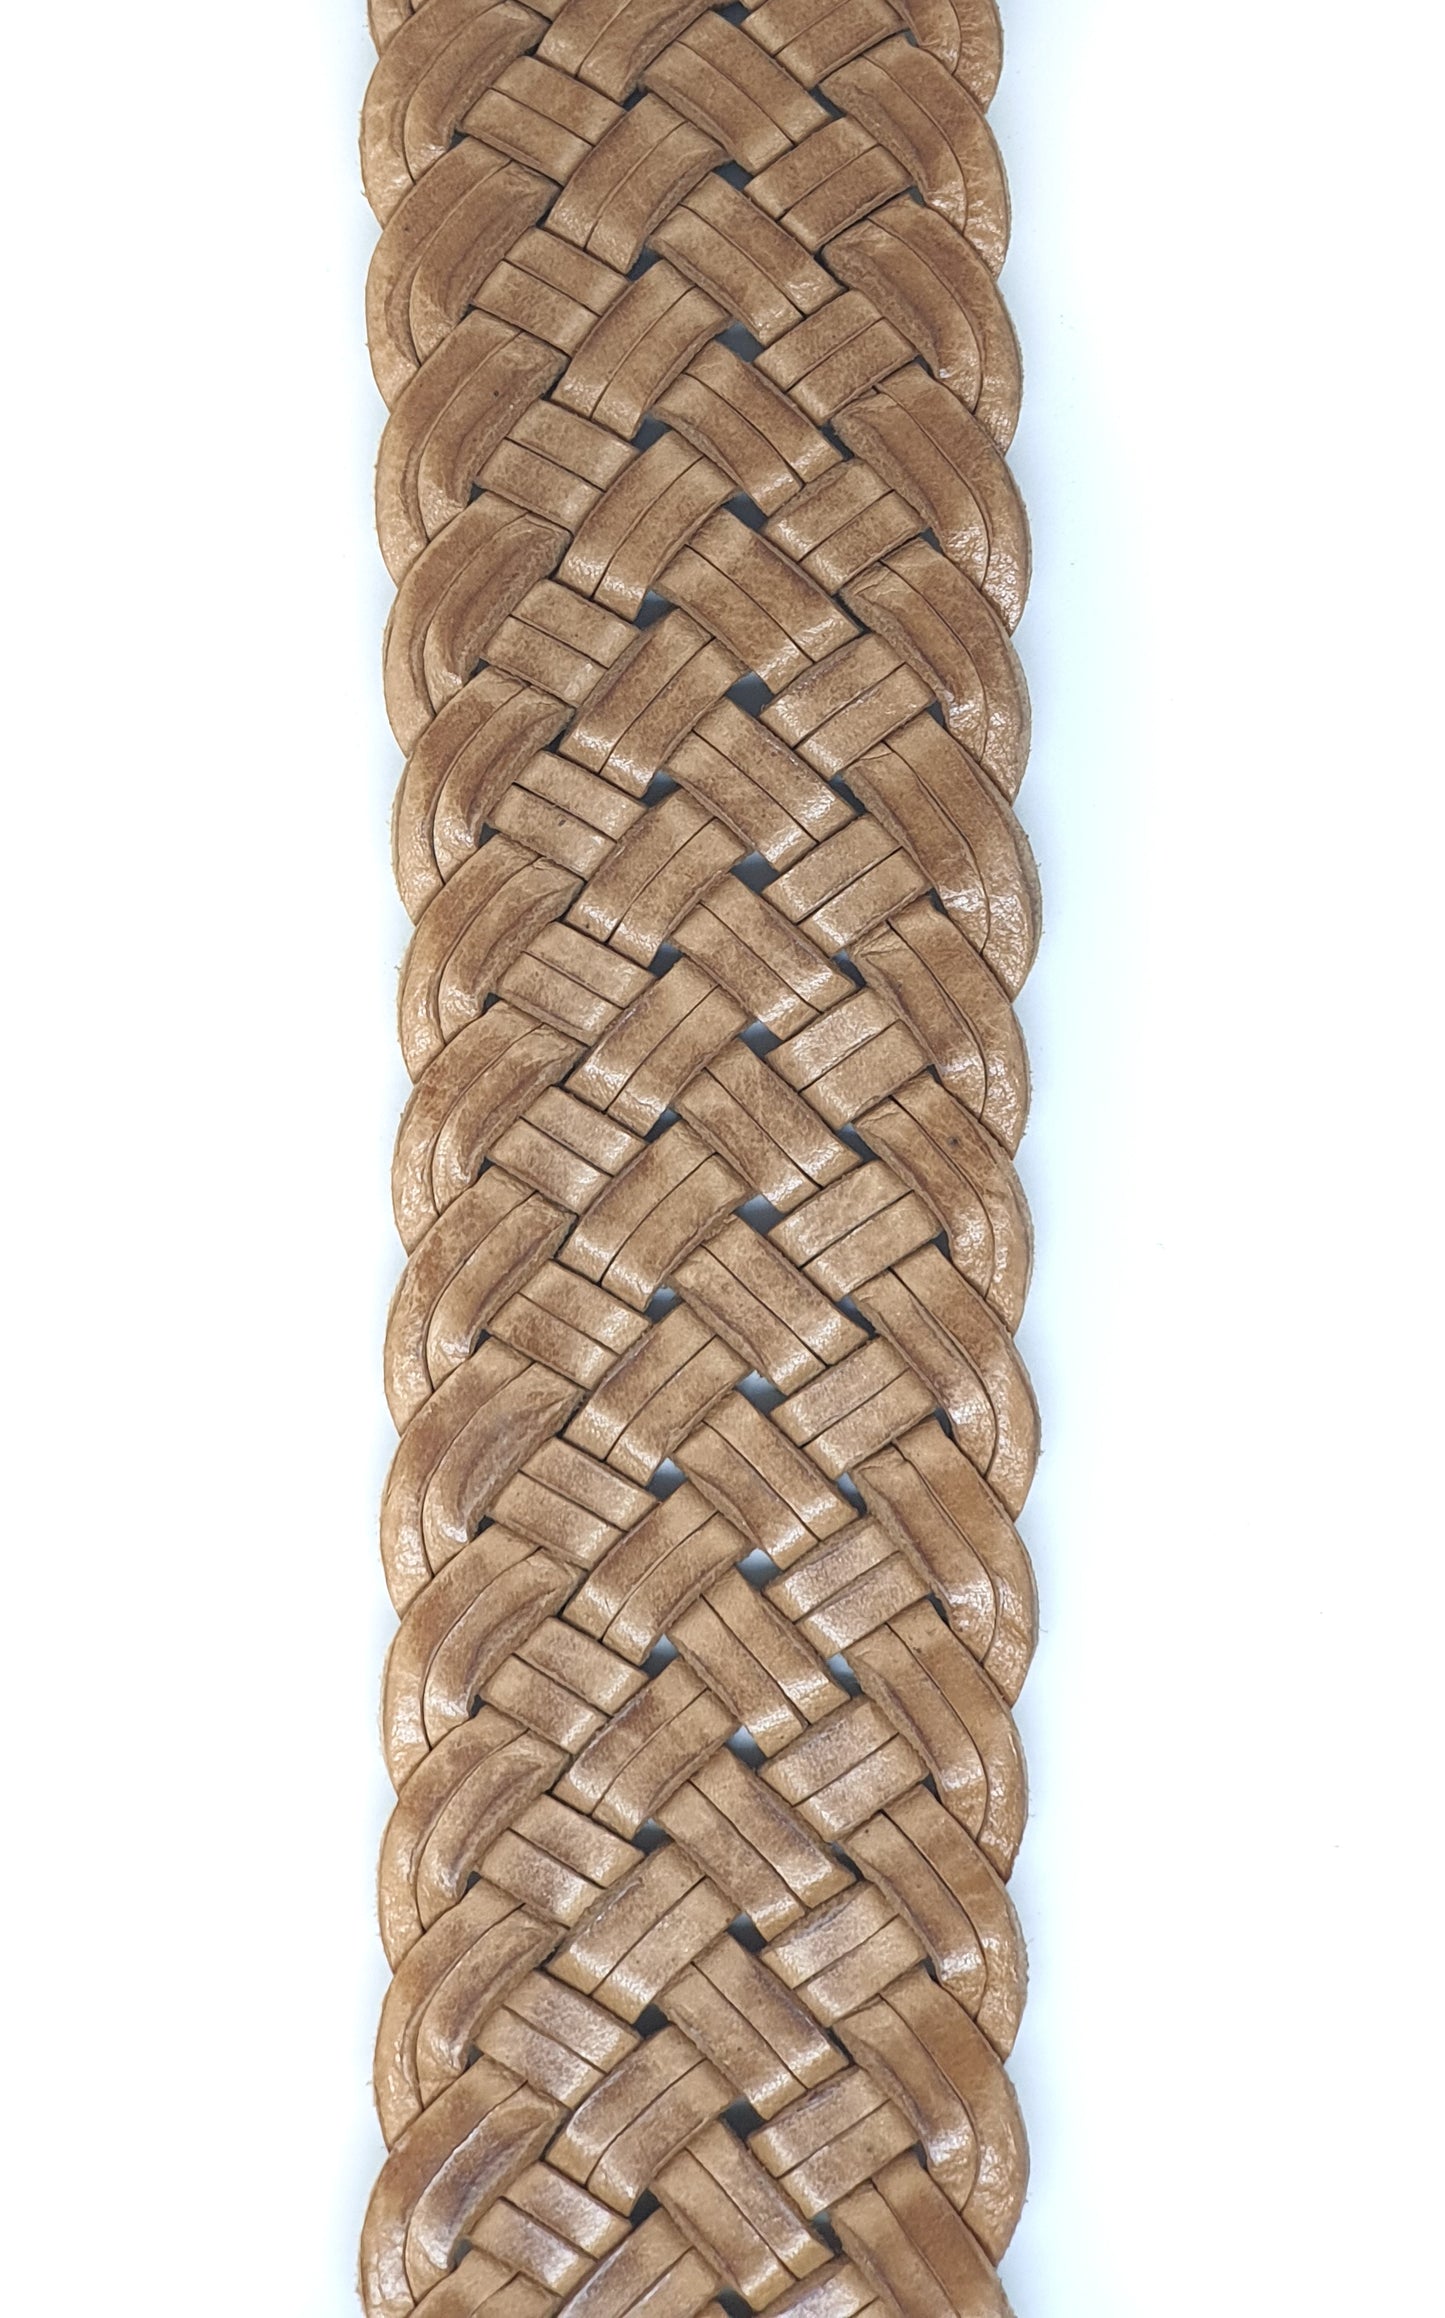 Leather belt in basketweave design